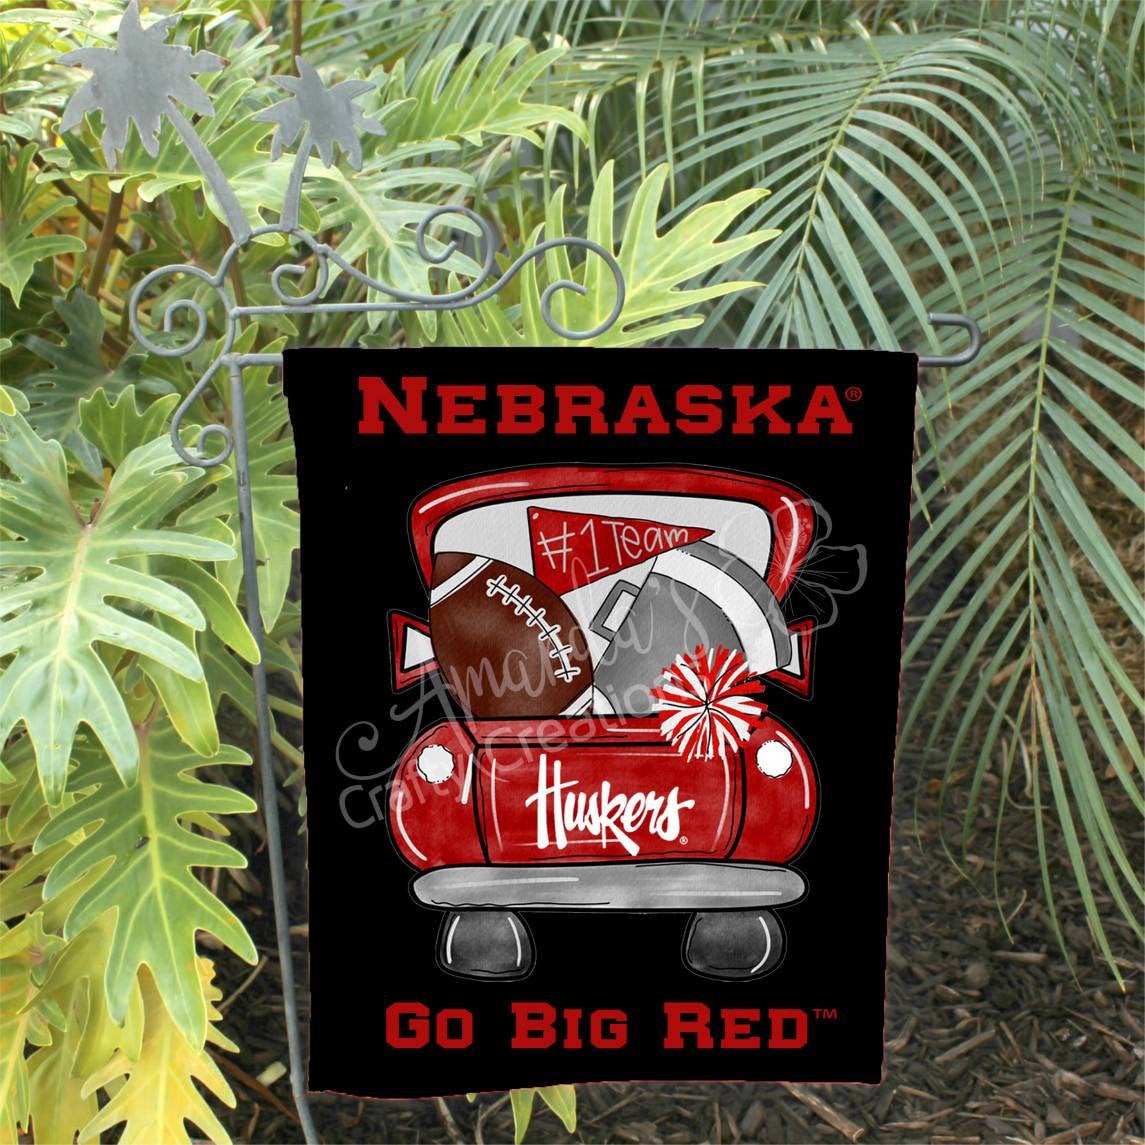 Nebraska Husker tailgate garden flag